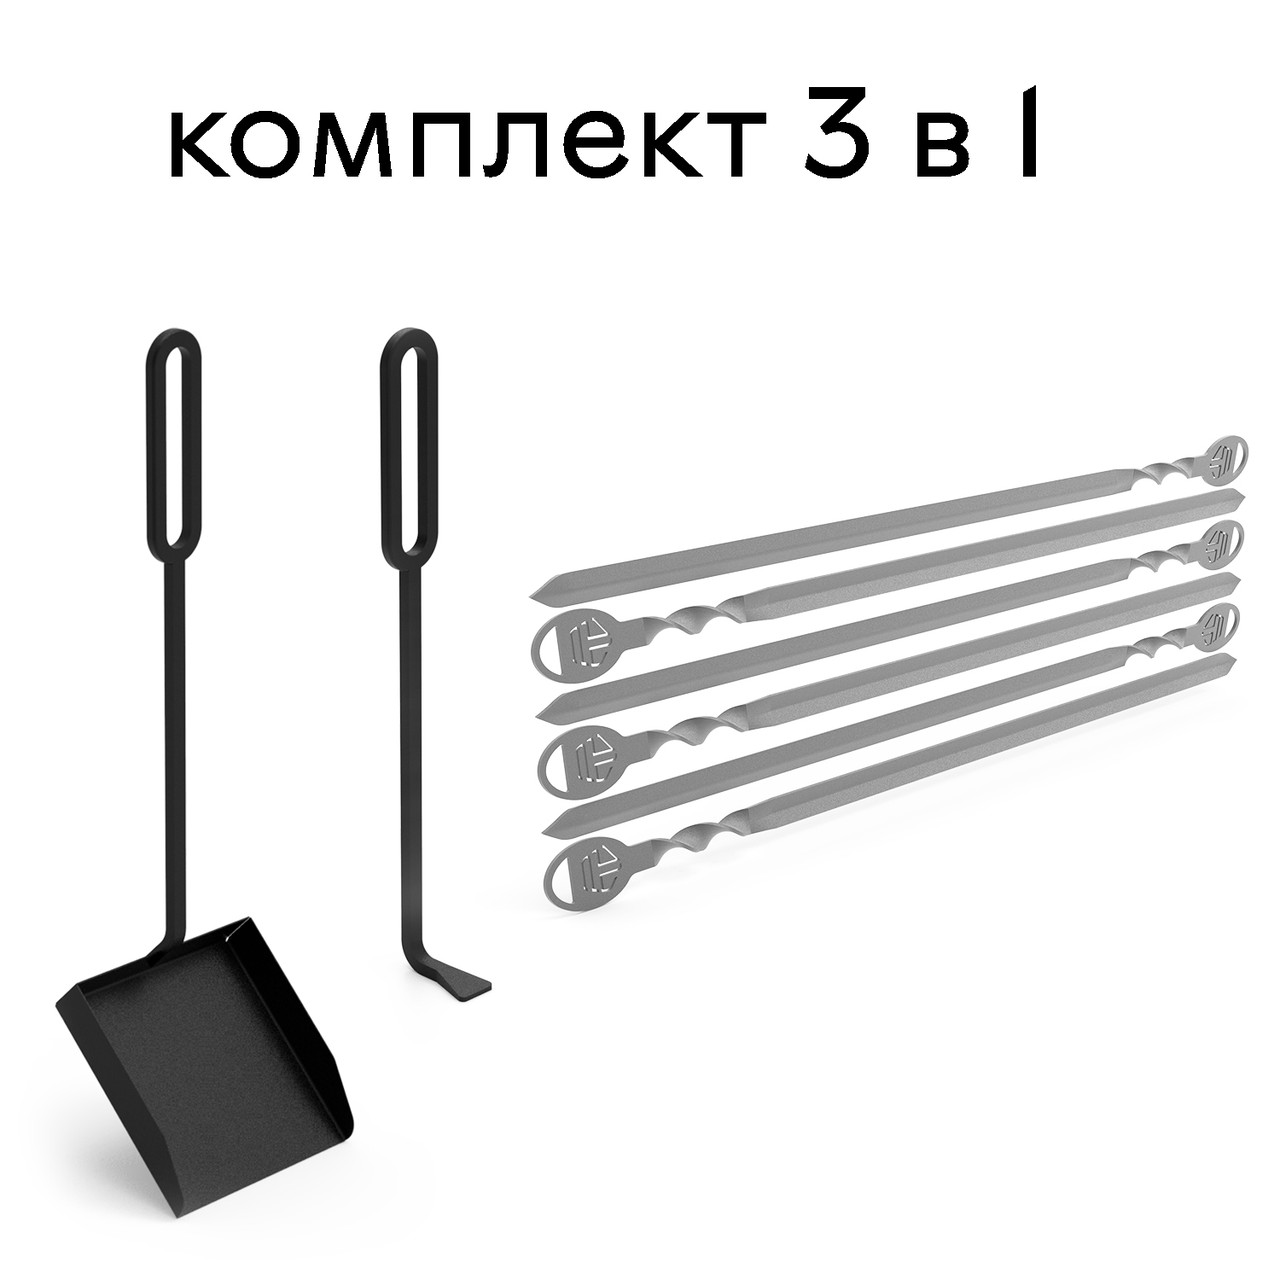 Комплект 3 в 1: совок, кочерга та шампура 6 штук 1.5 мм